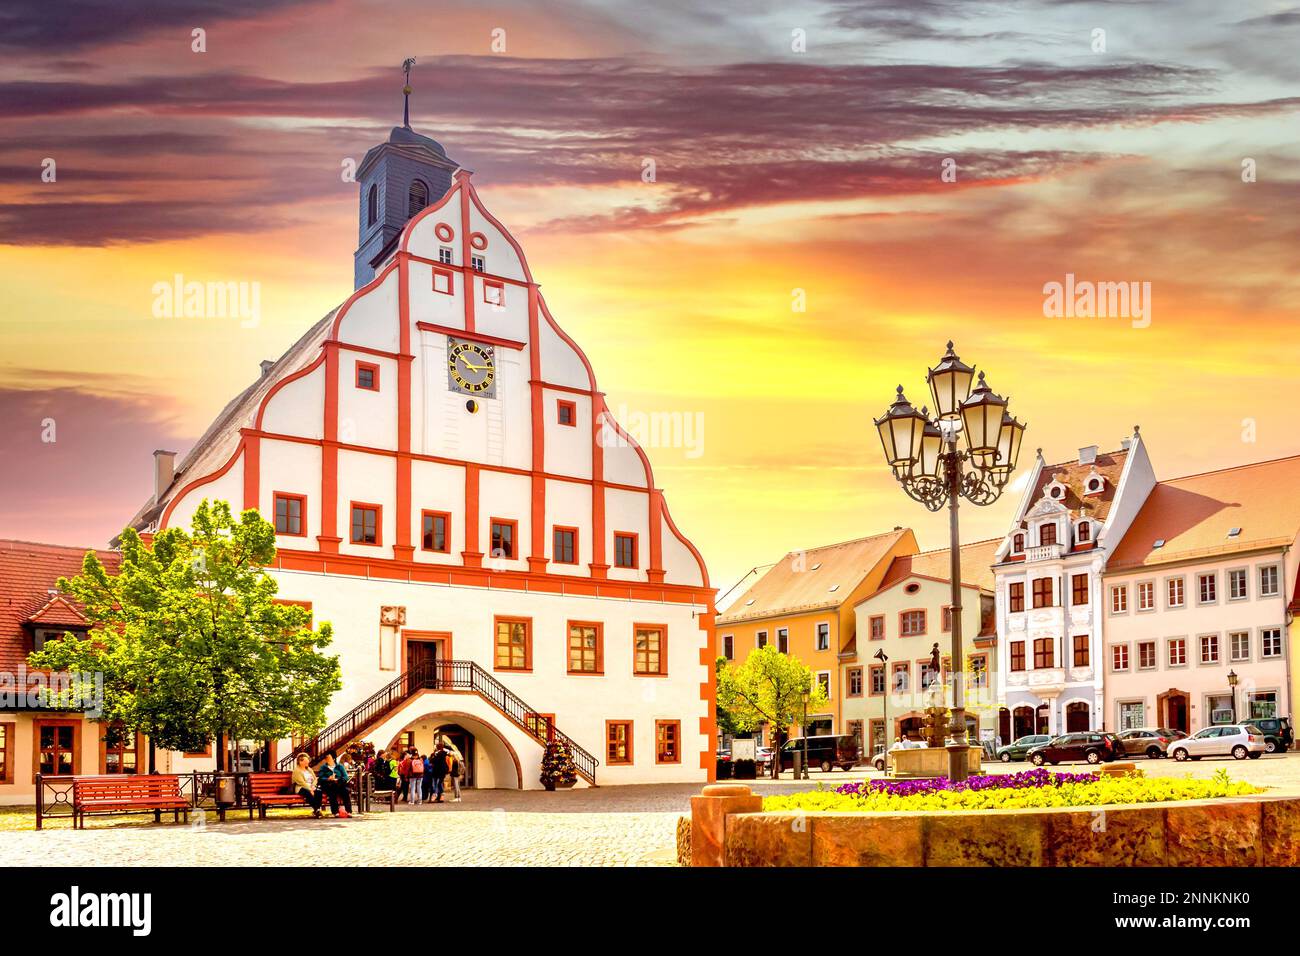 City hall, Grimma, Saxony, Germany Stock Photo